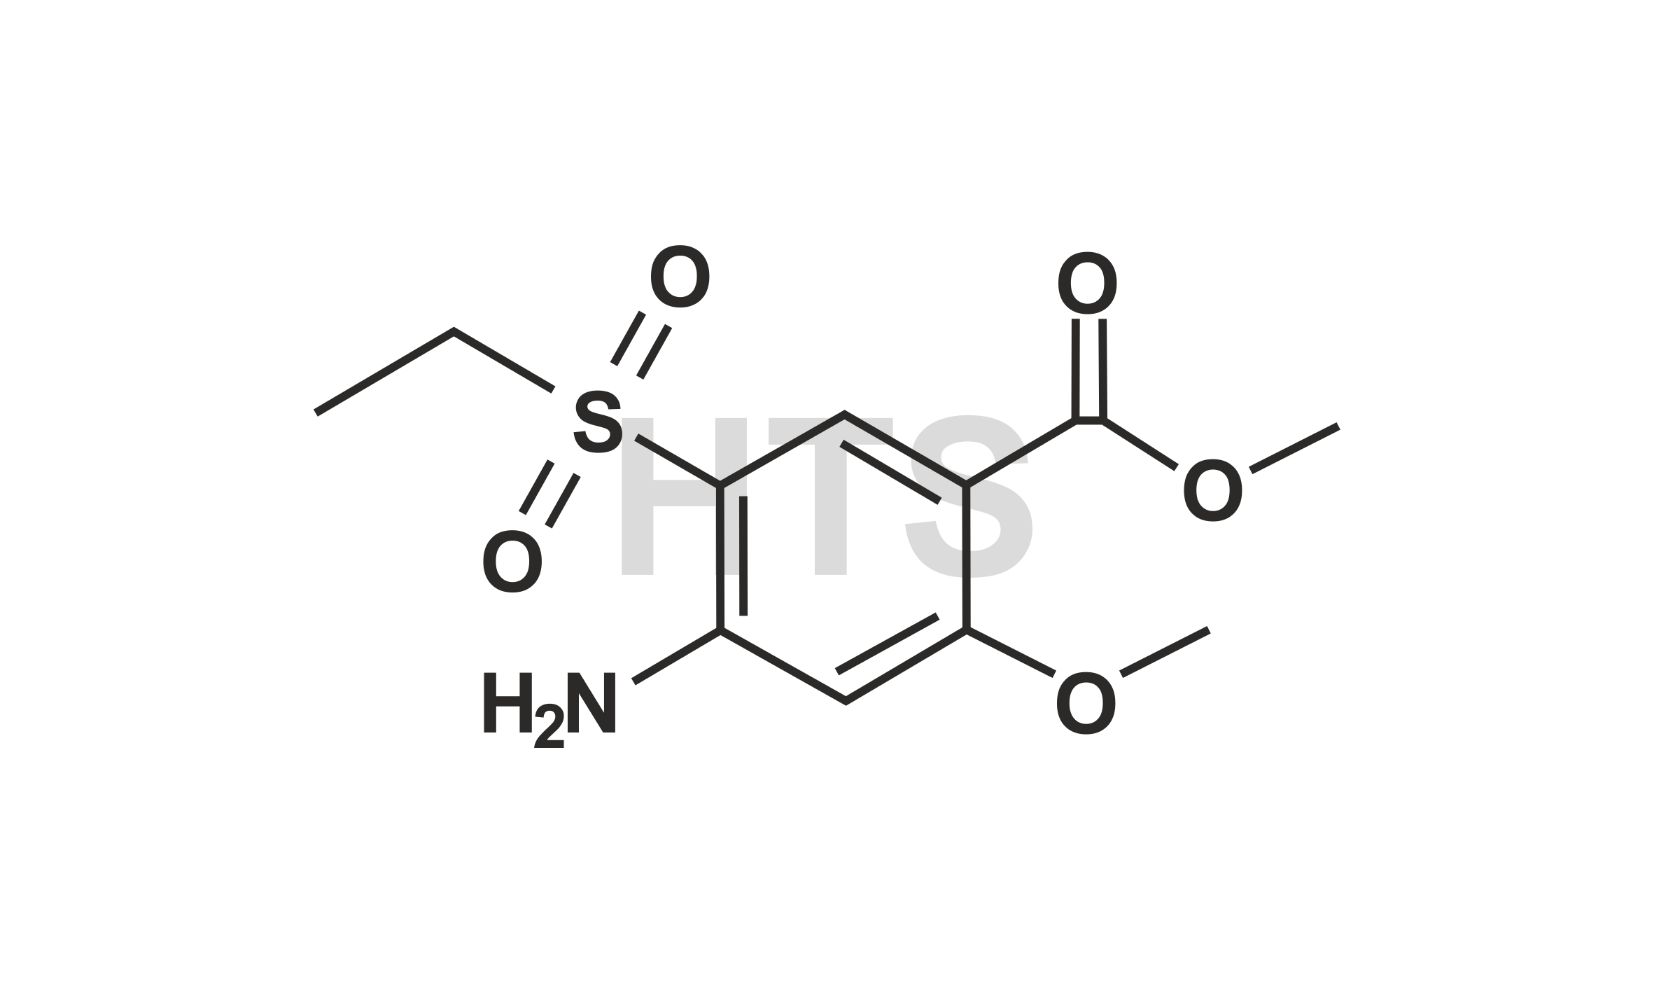 Methyl 4-Amino-5-Ethylsulfonyl-2-Methoxybenzoate